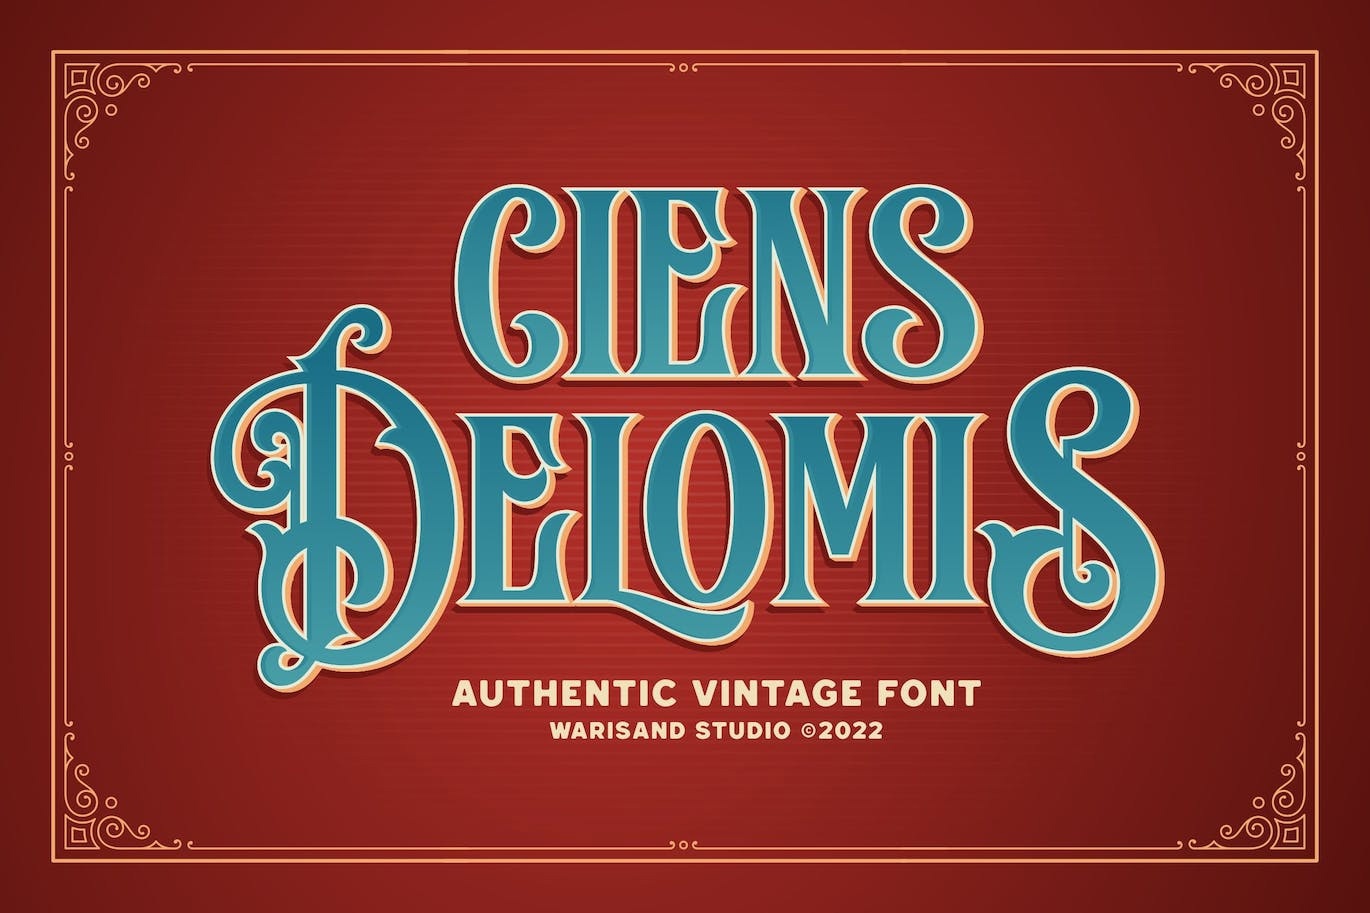 Пример шрифта Ciens Delomis